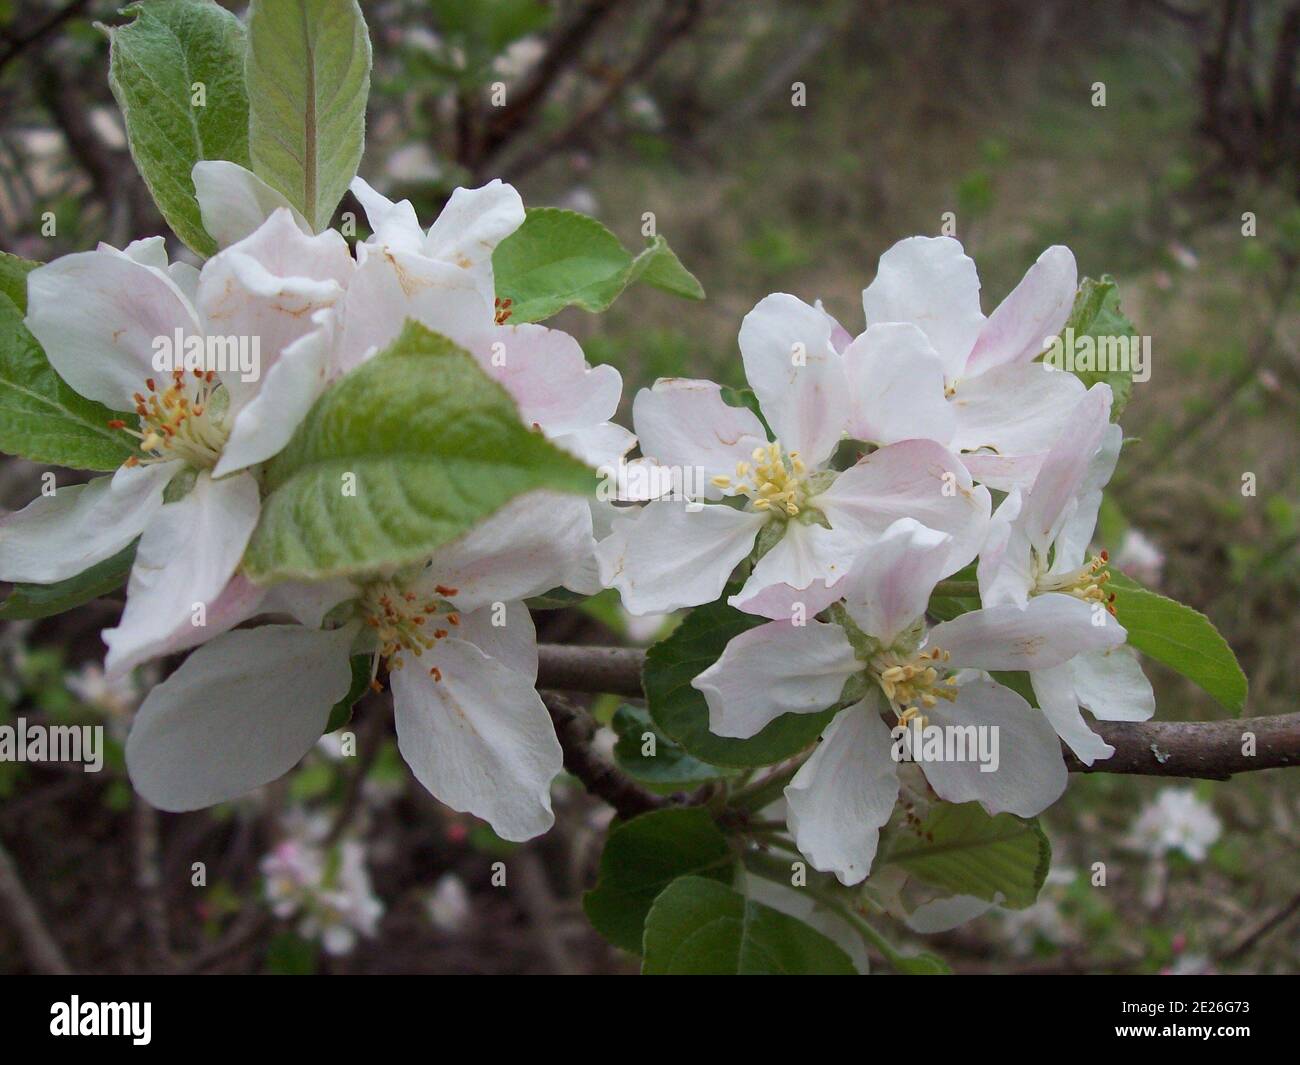 Closeup shot of beautiful melastomataceae flowers in a garden Stock Photo